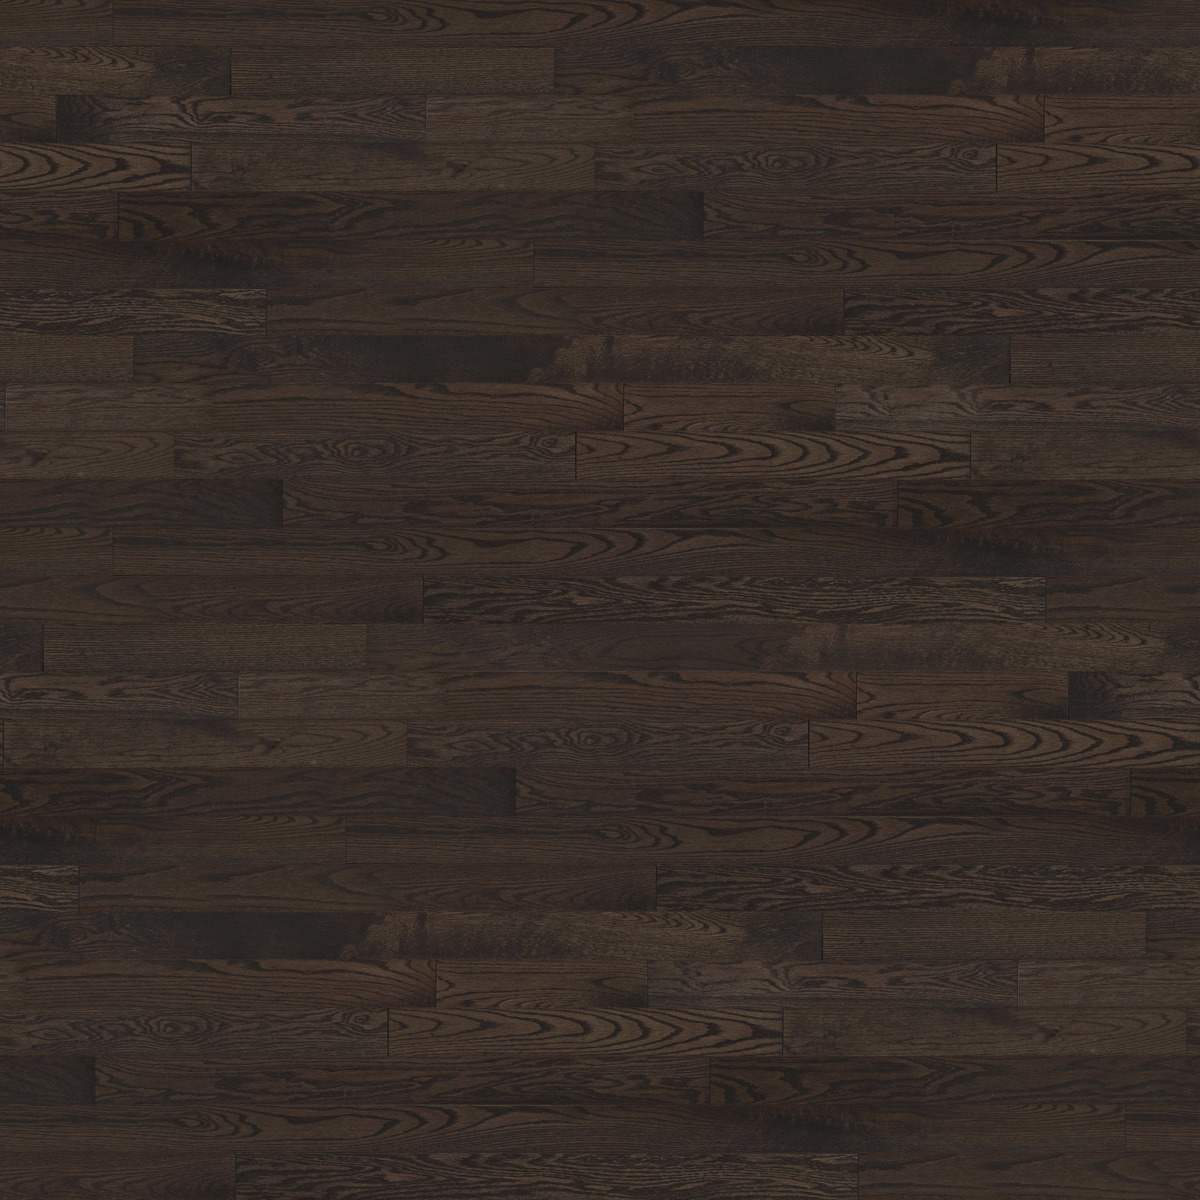 Jasper Red Oak Hardwood Flooring 2 1 4, Signature Hardwood Floors